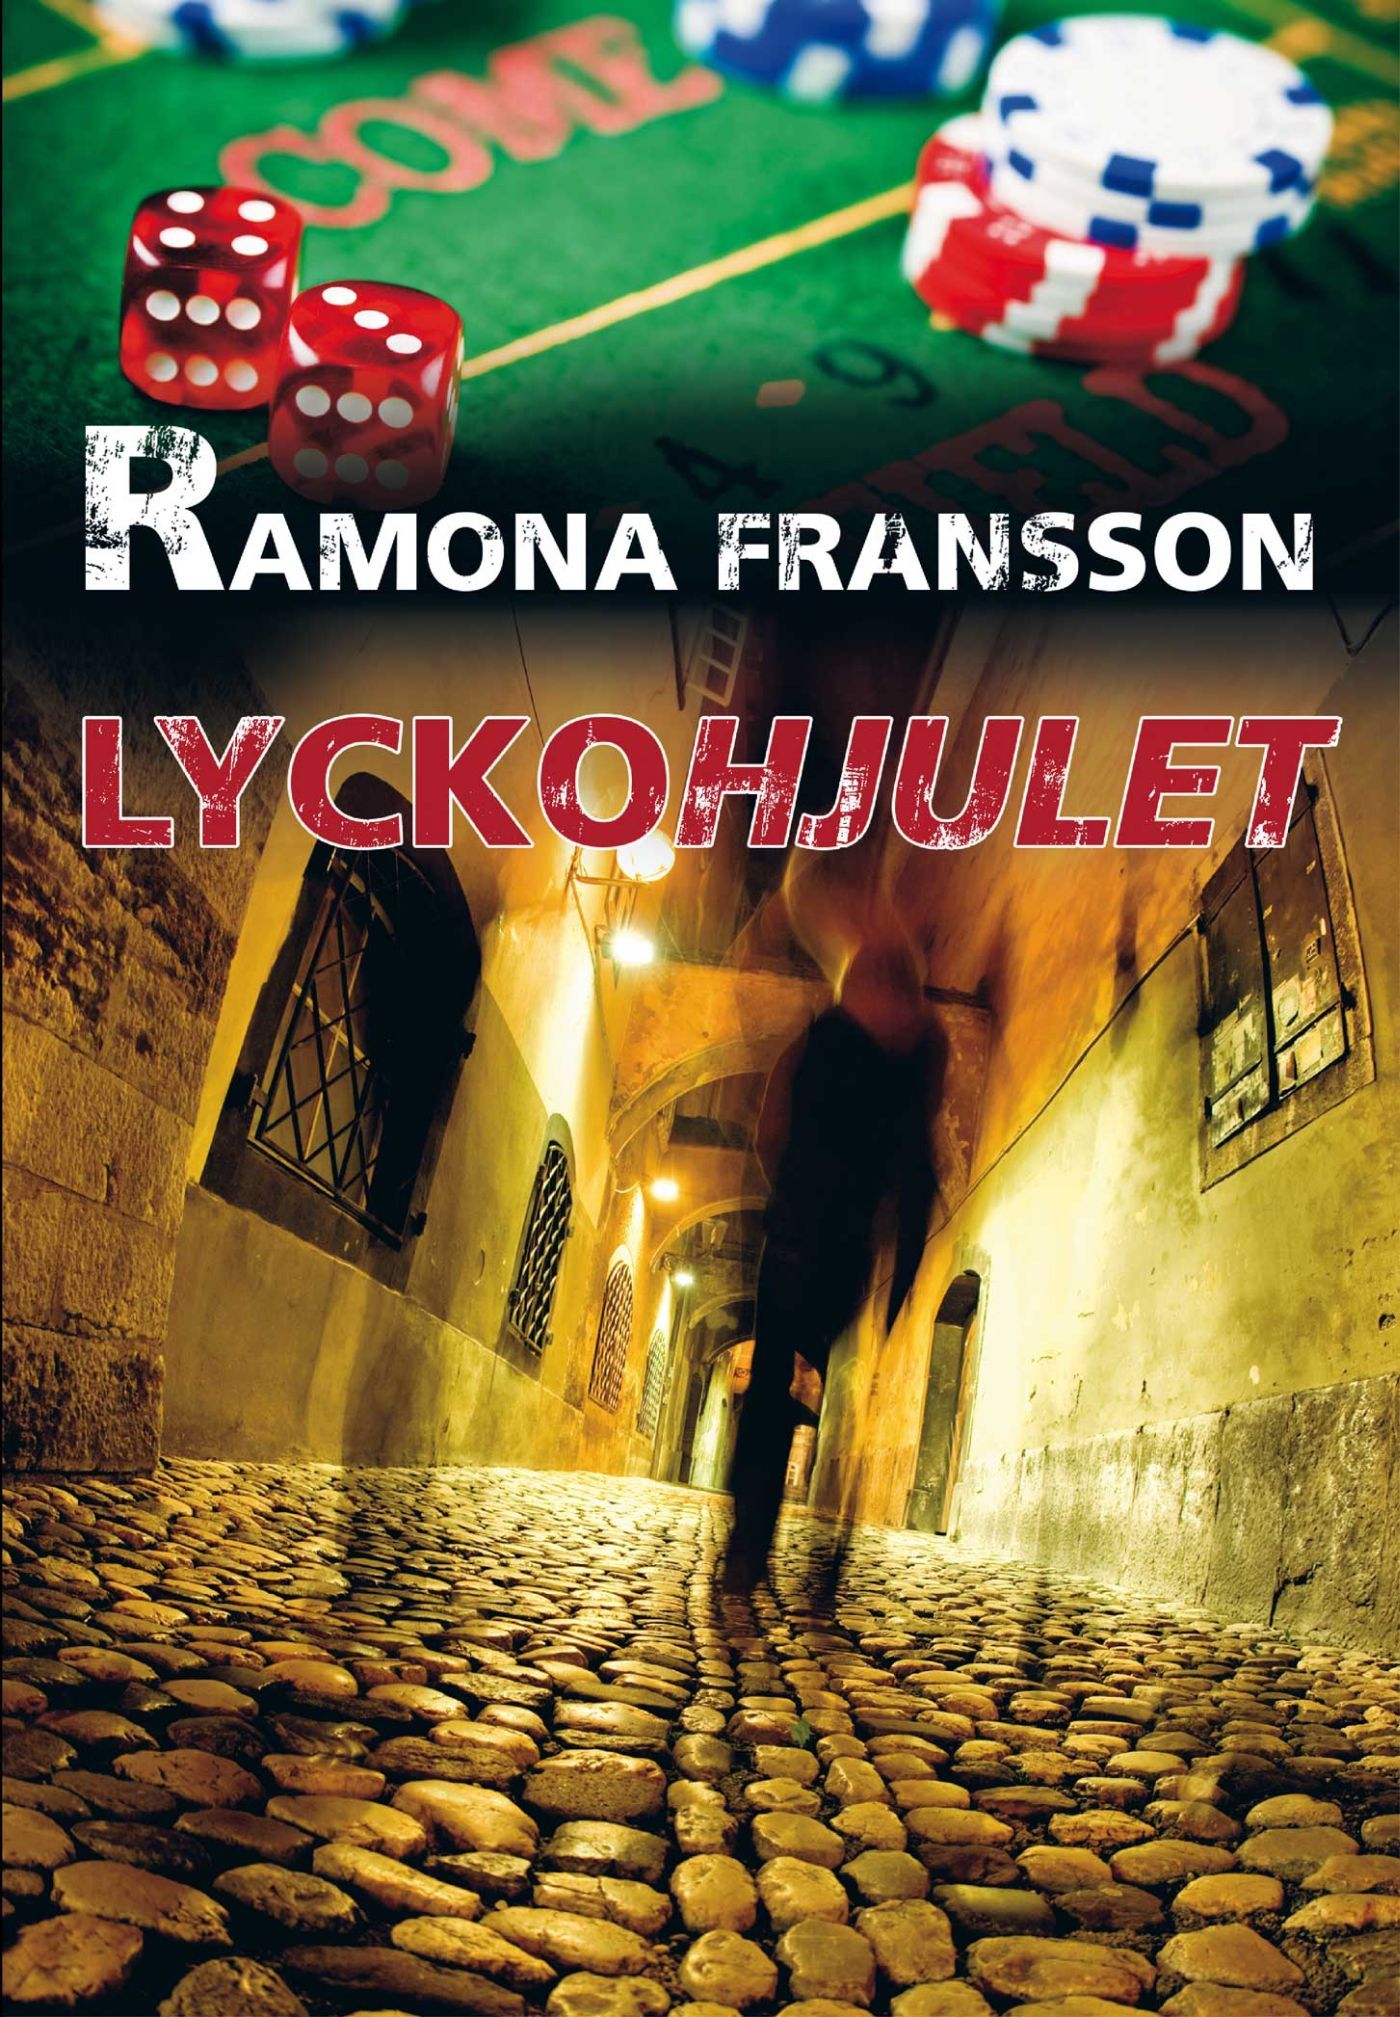 Lyckohjulet, e-bok av Ramona Fransson